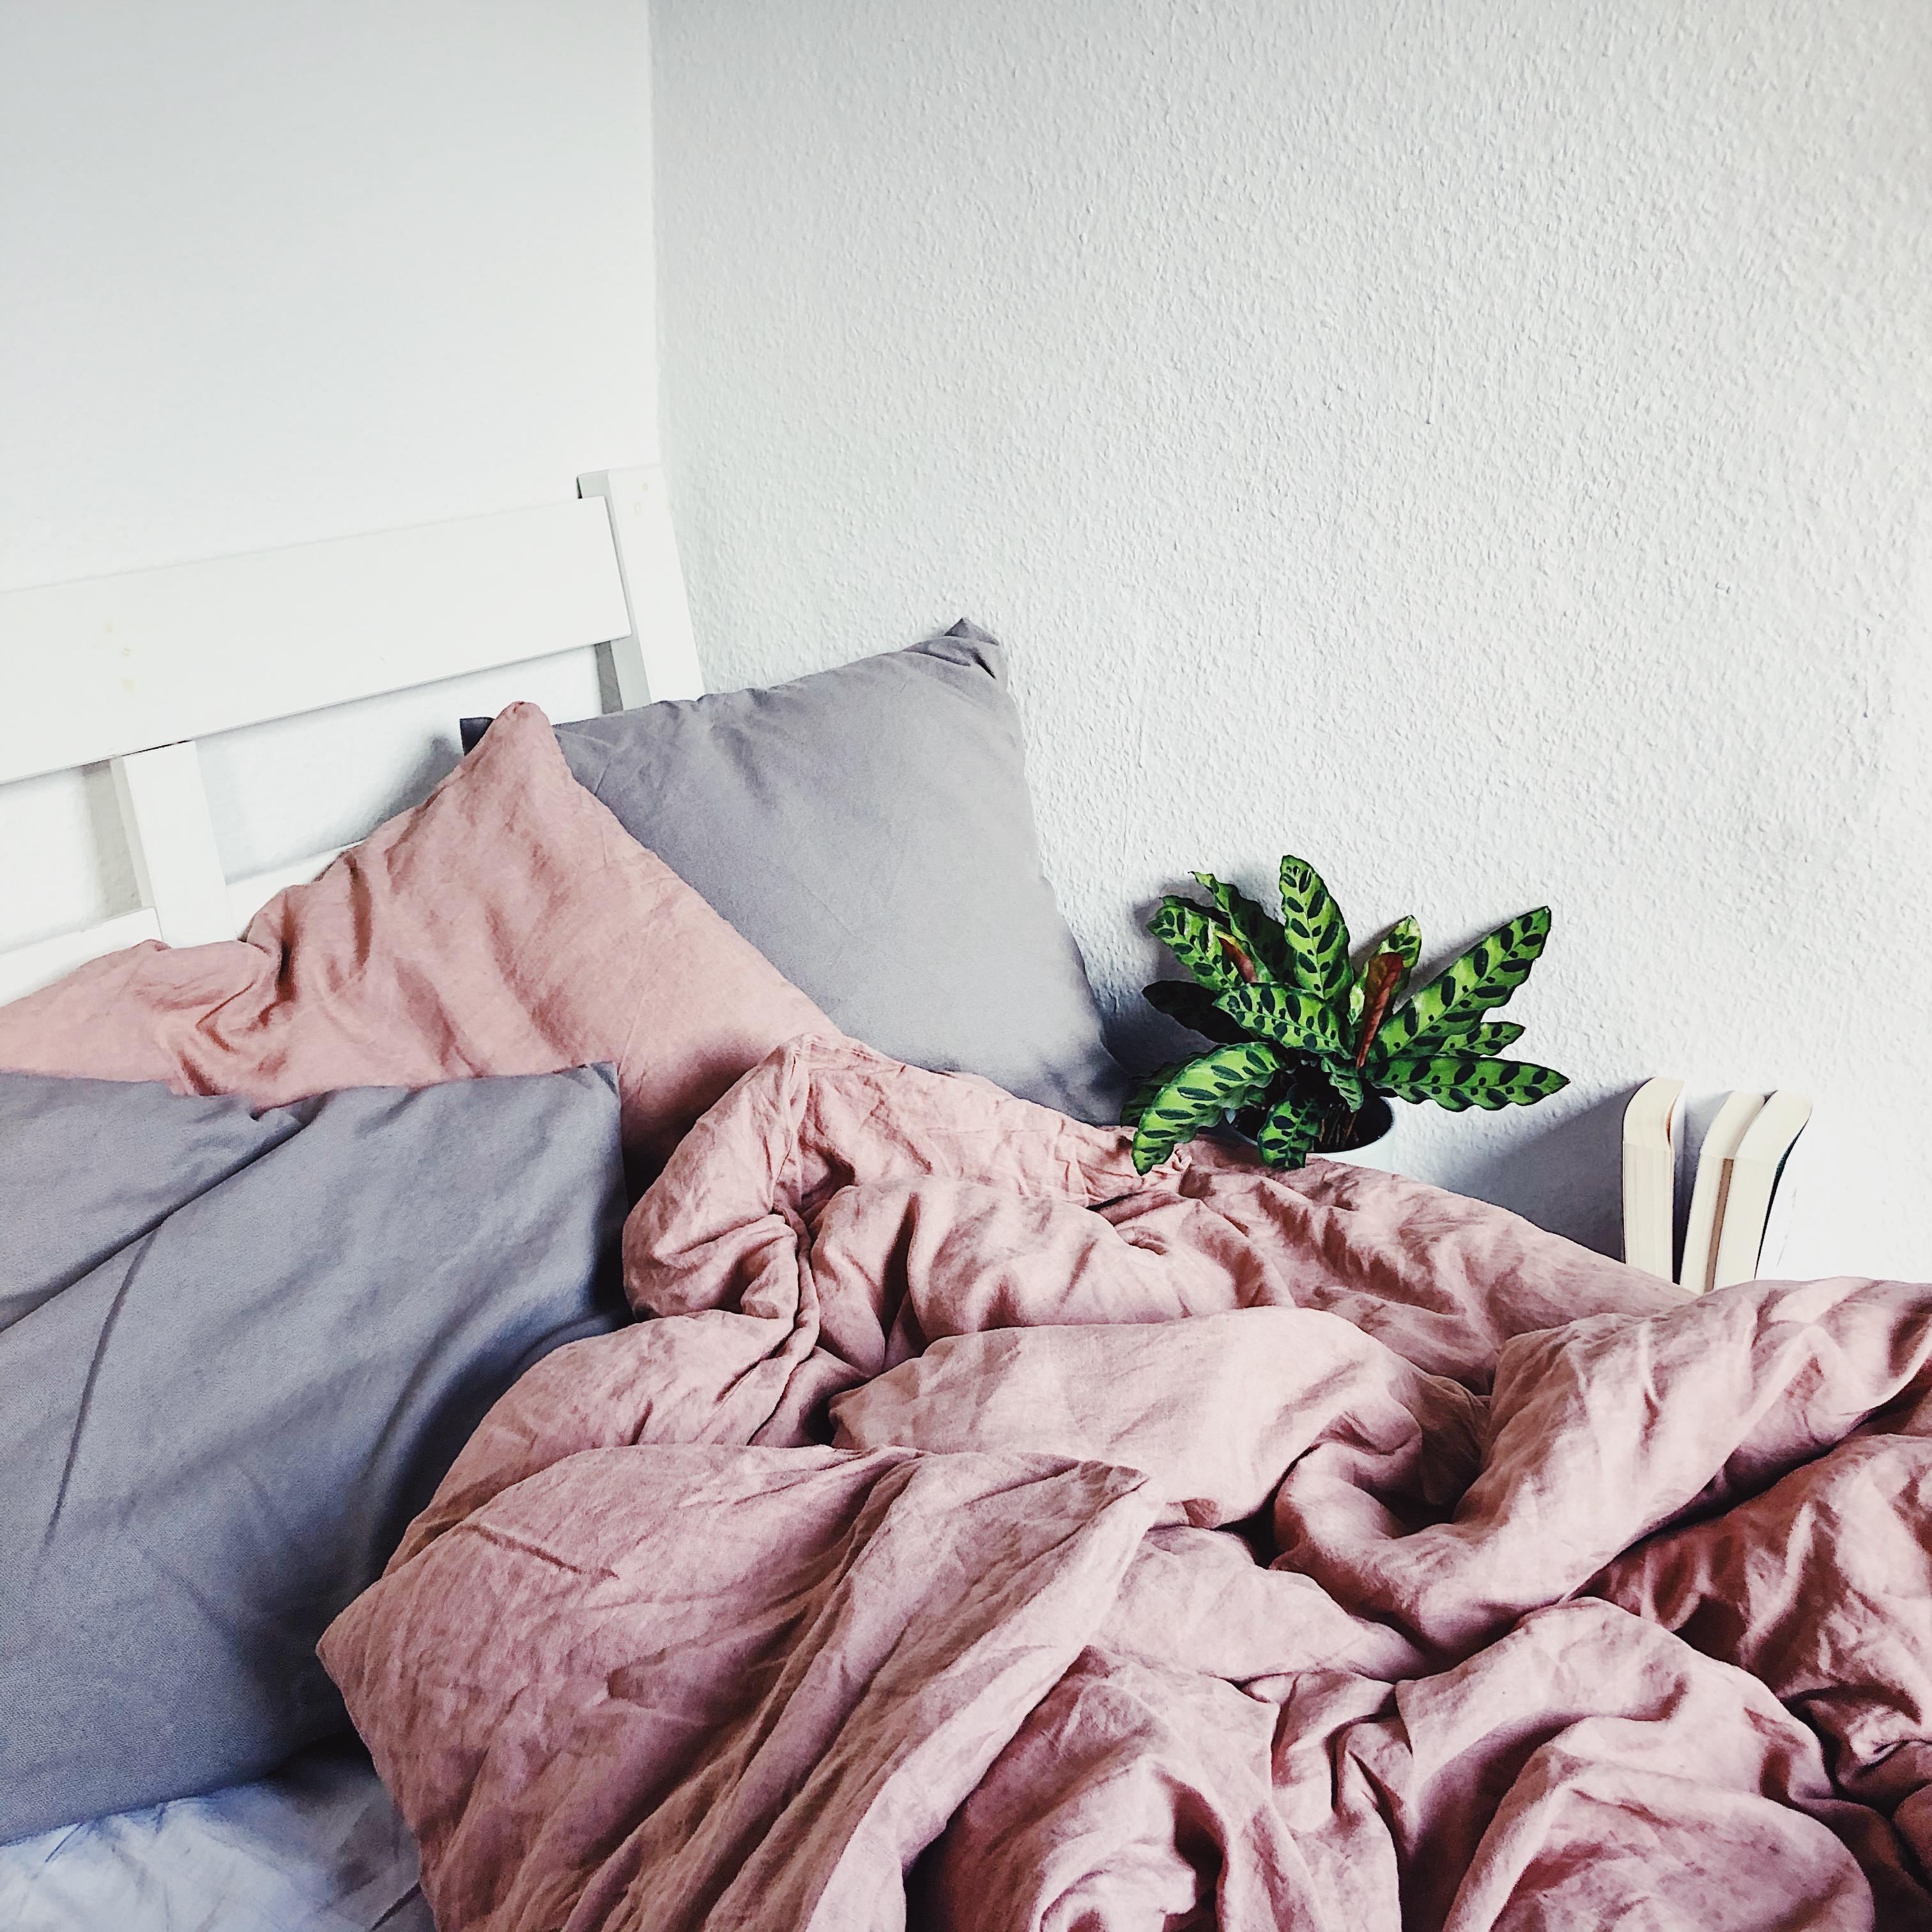 Wochenenden sind doch einfach für Kaffee im Bett reserviert, oder was denkt ihr? 
#Schlafzimmer #Leinenbettwäsche 